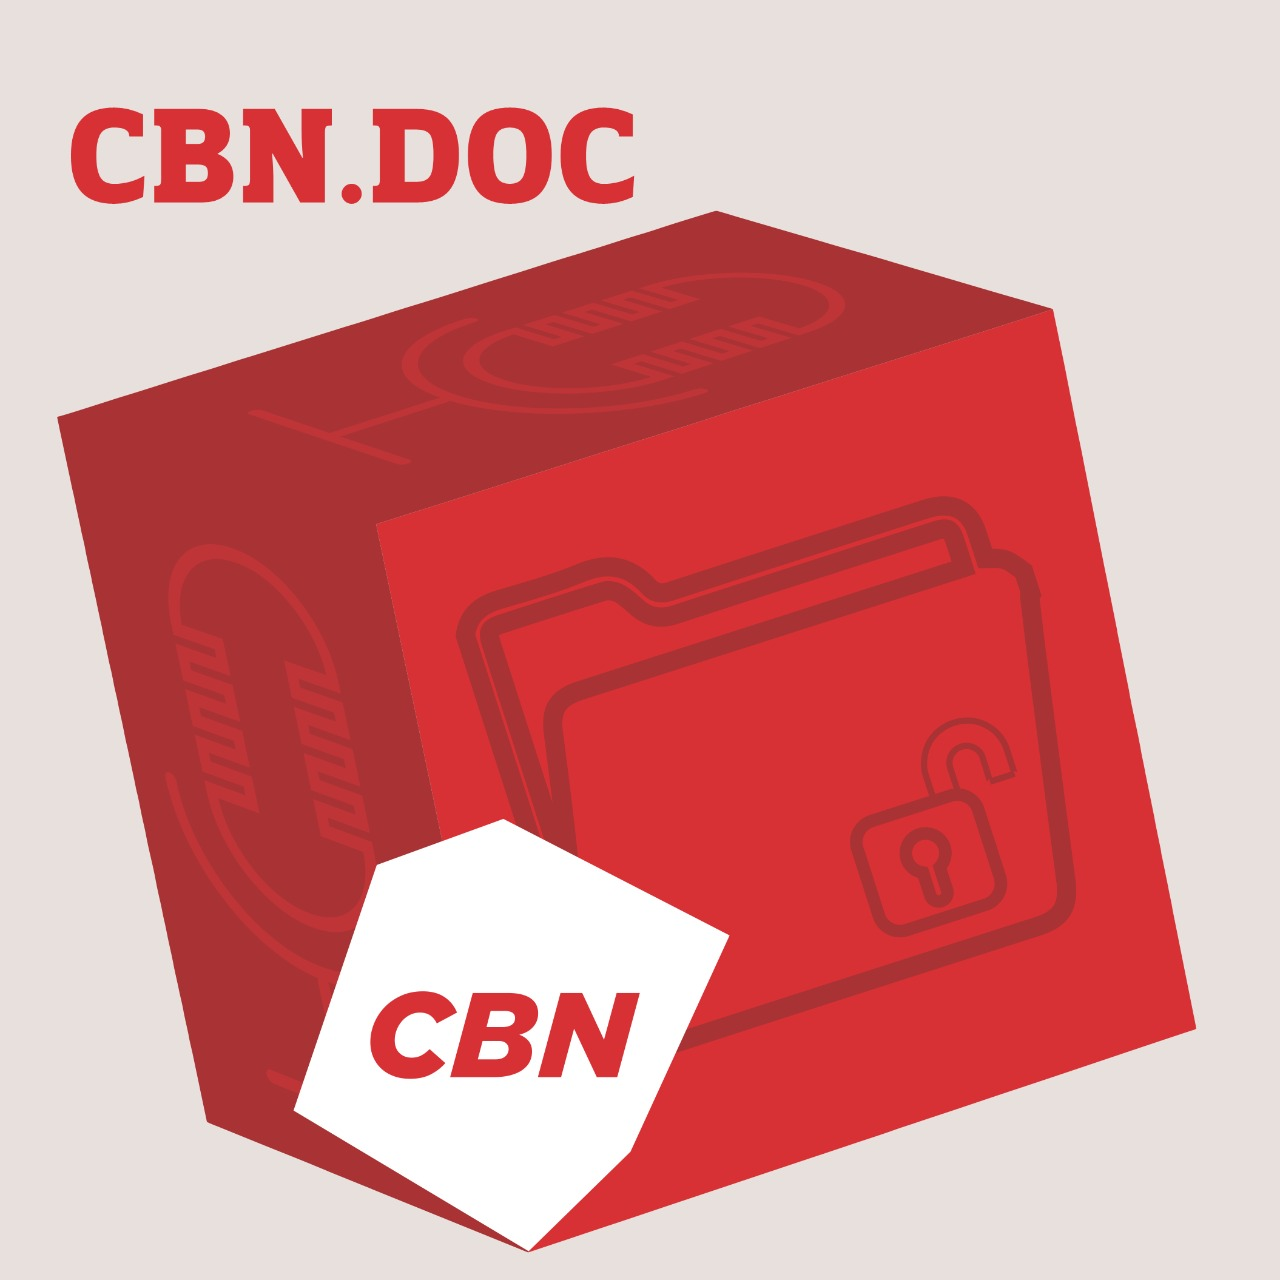 CBN.DOC - Ribeirão